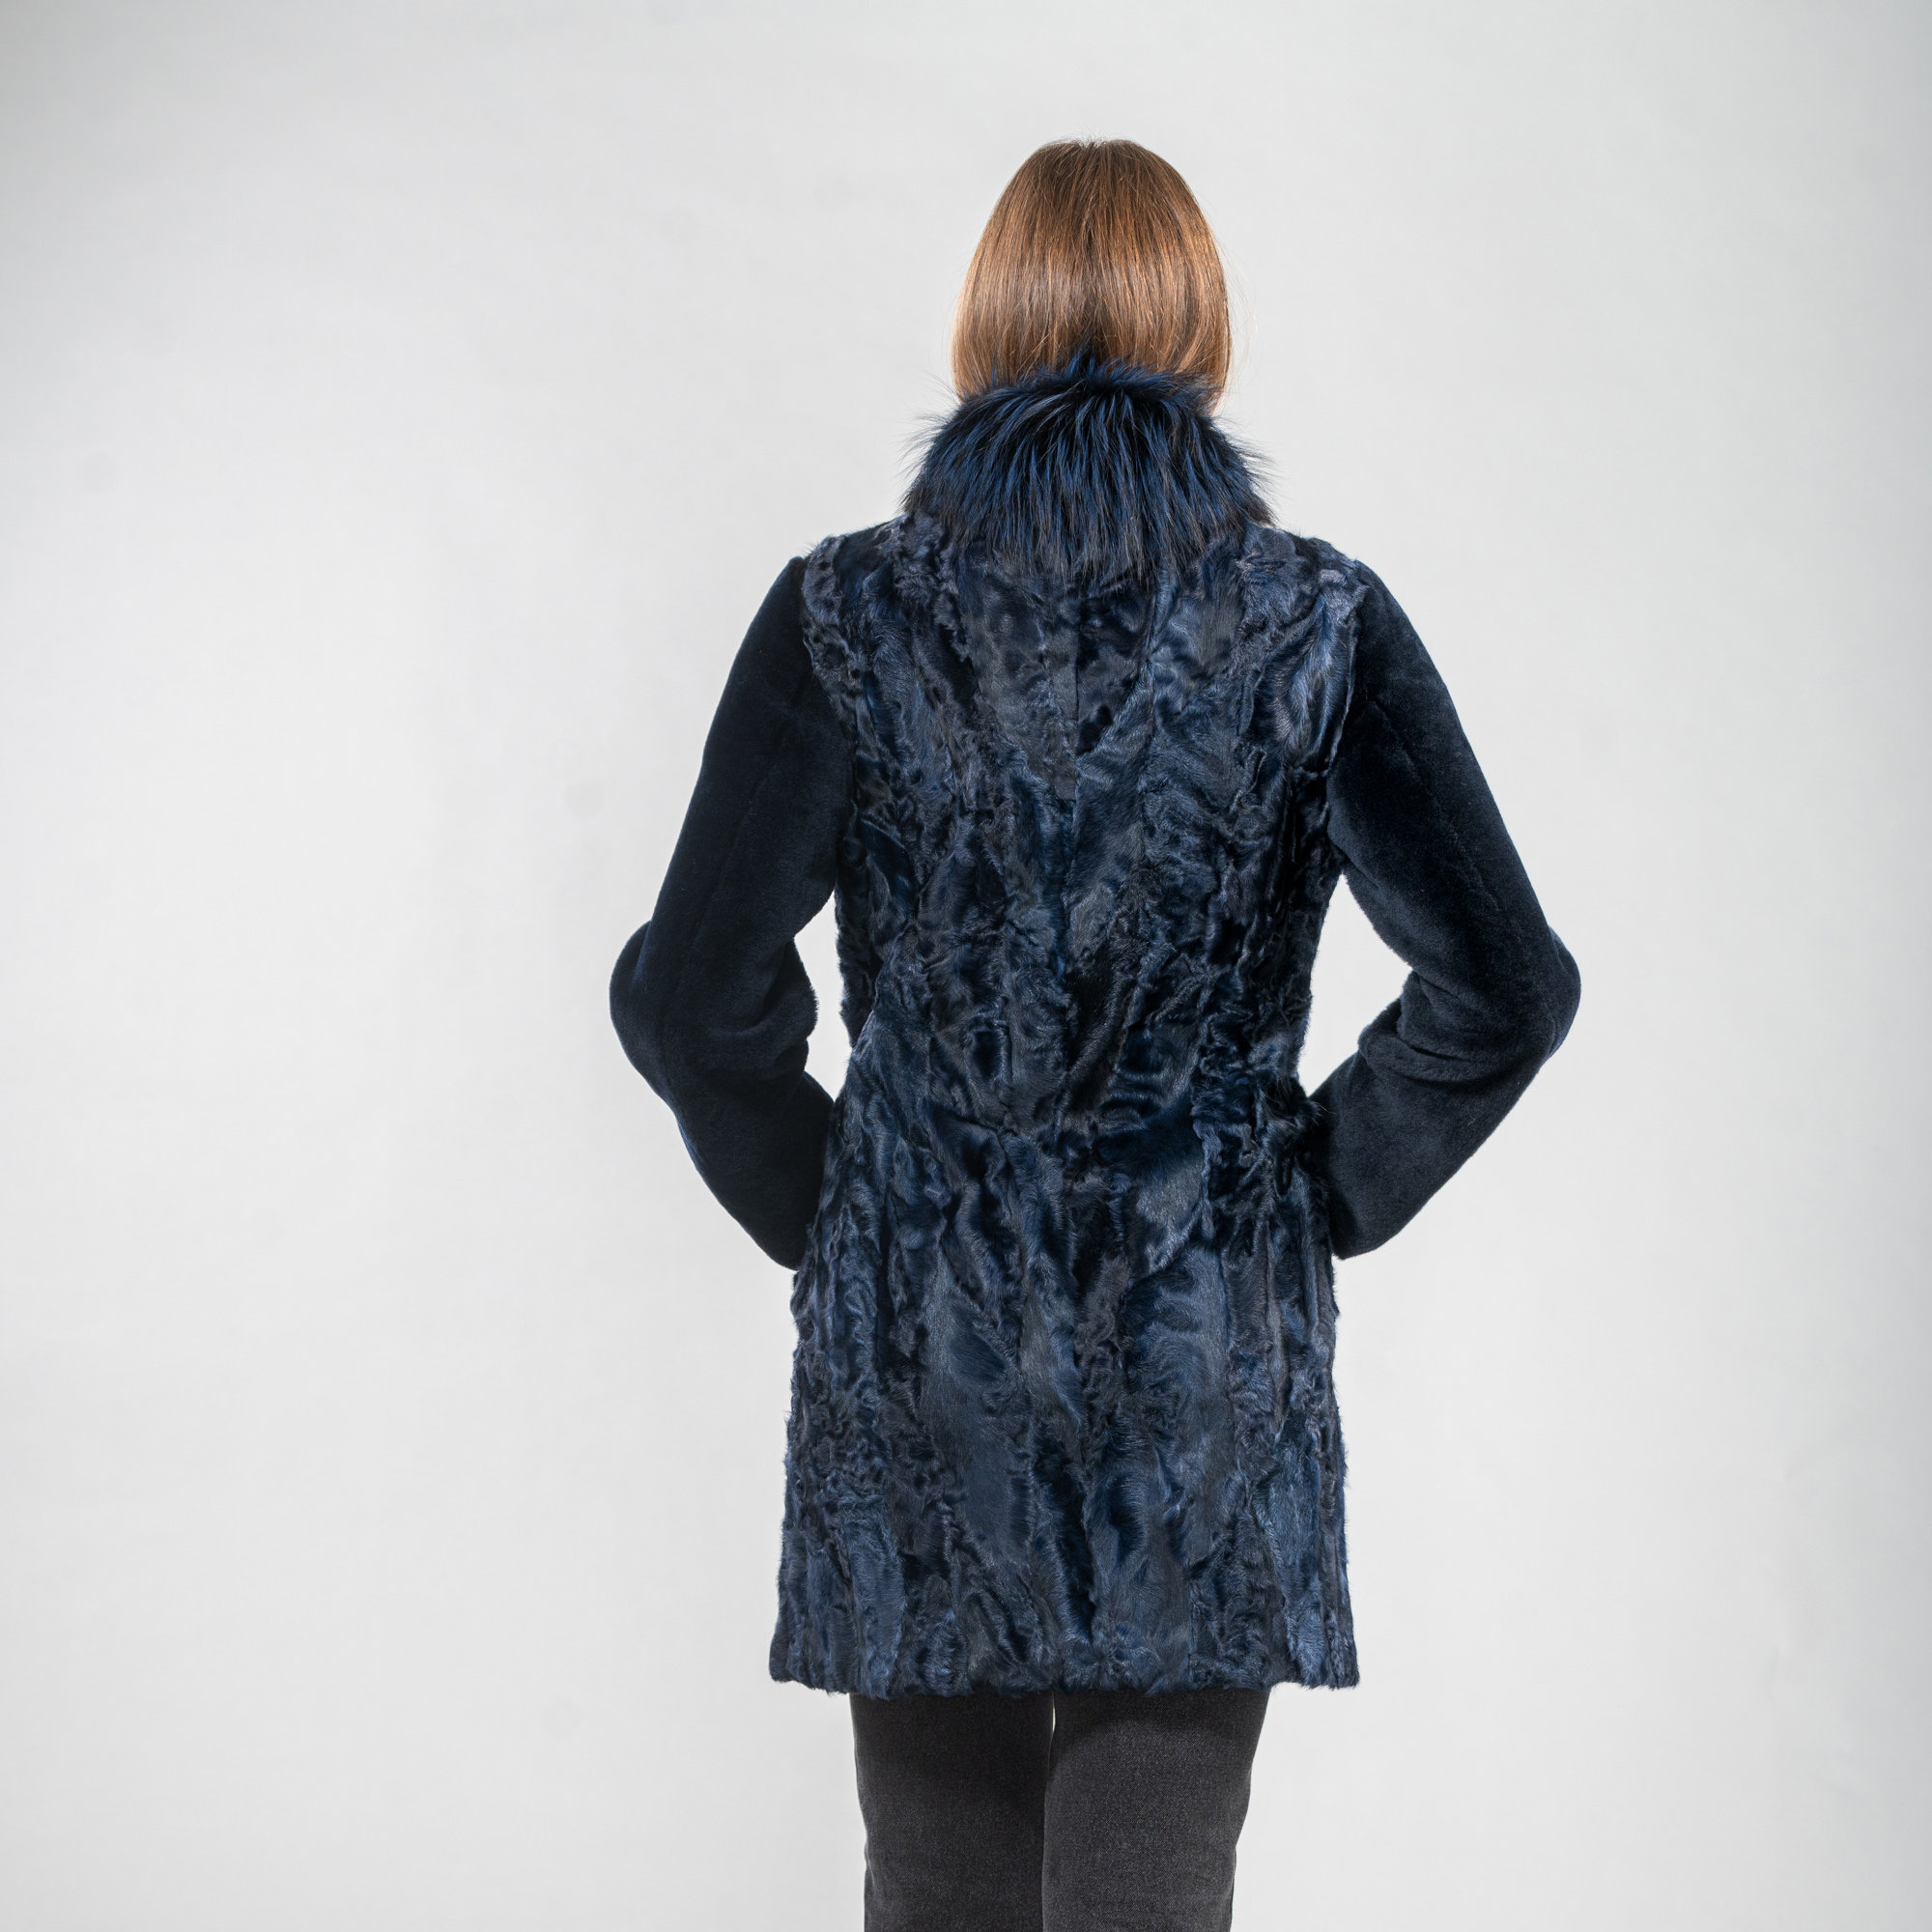 Blue Astrakhan fur coat with fur details